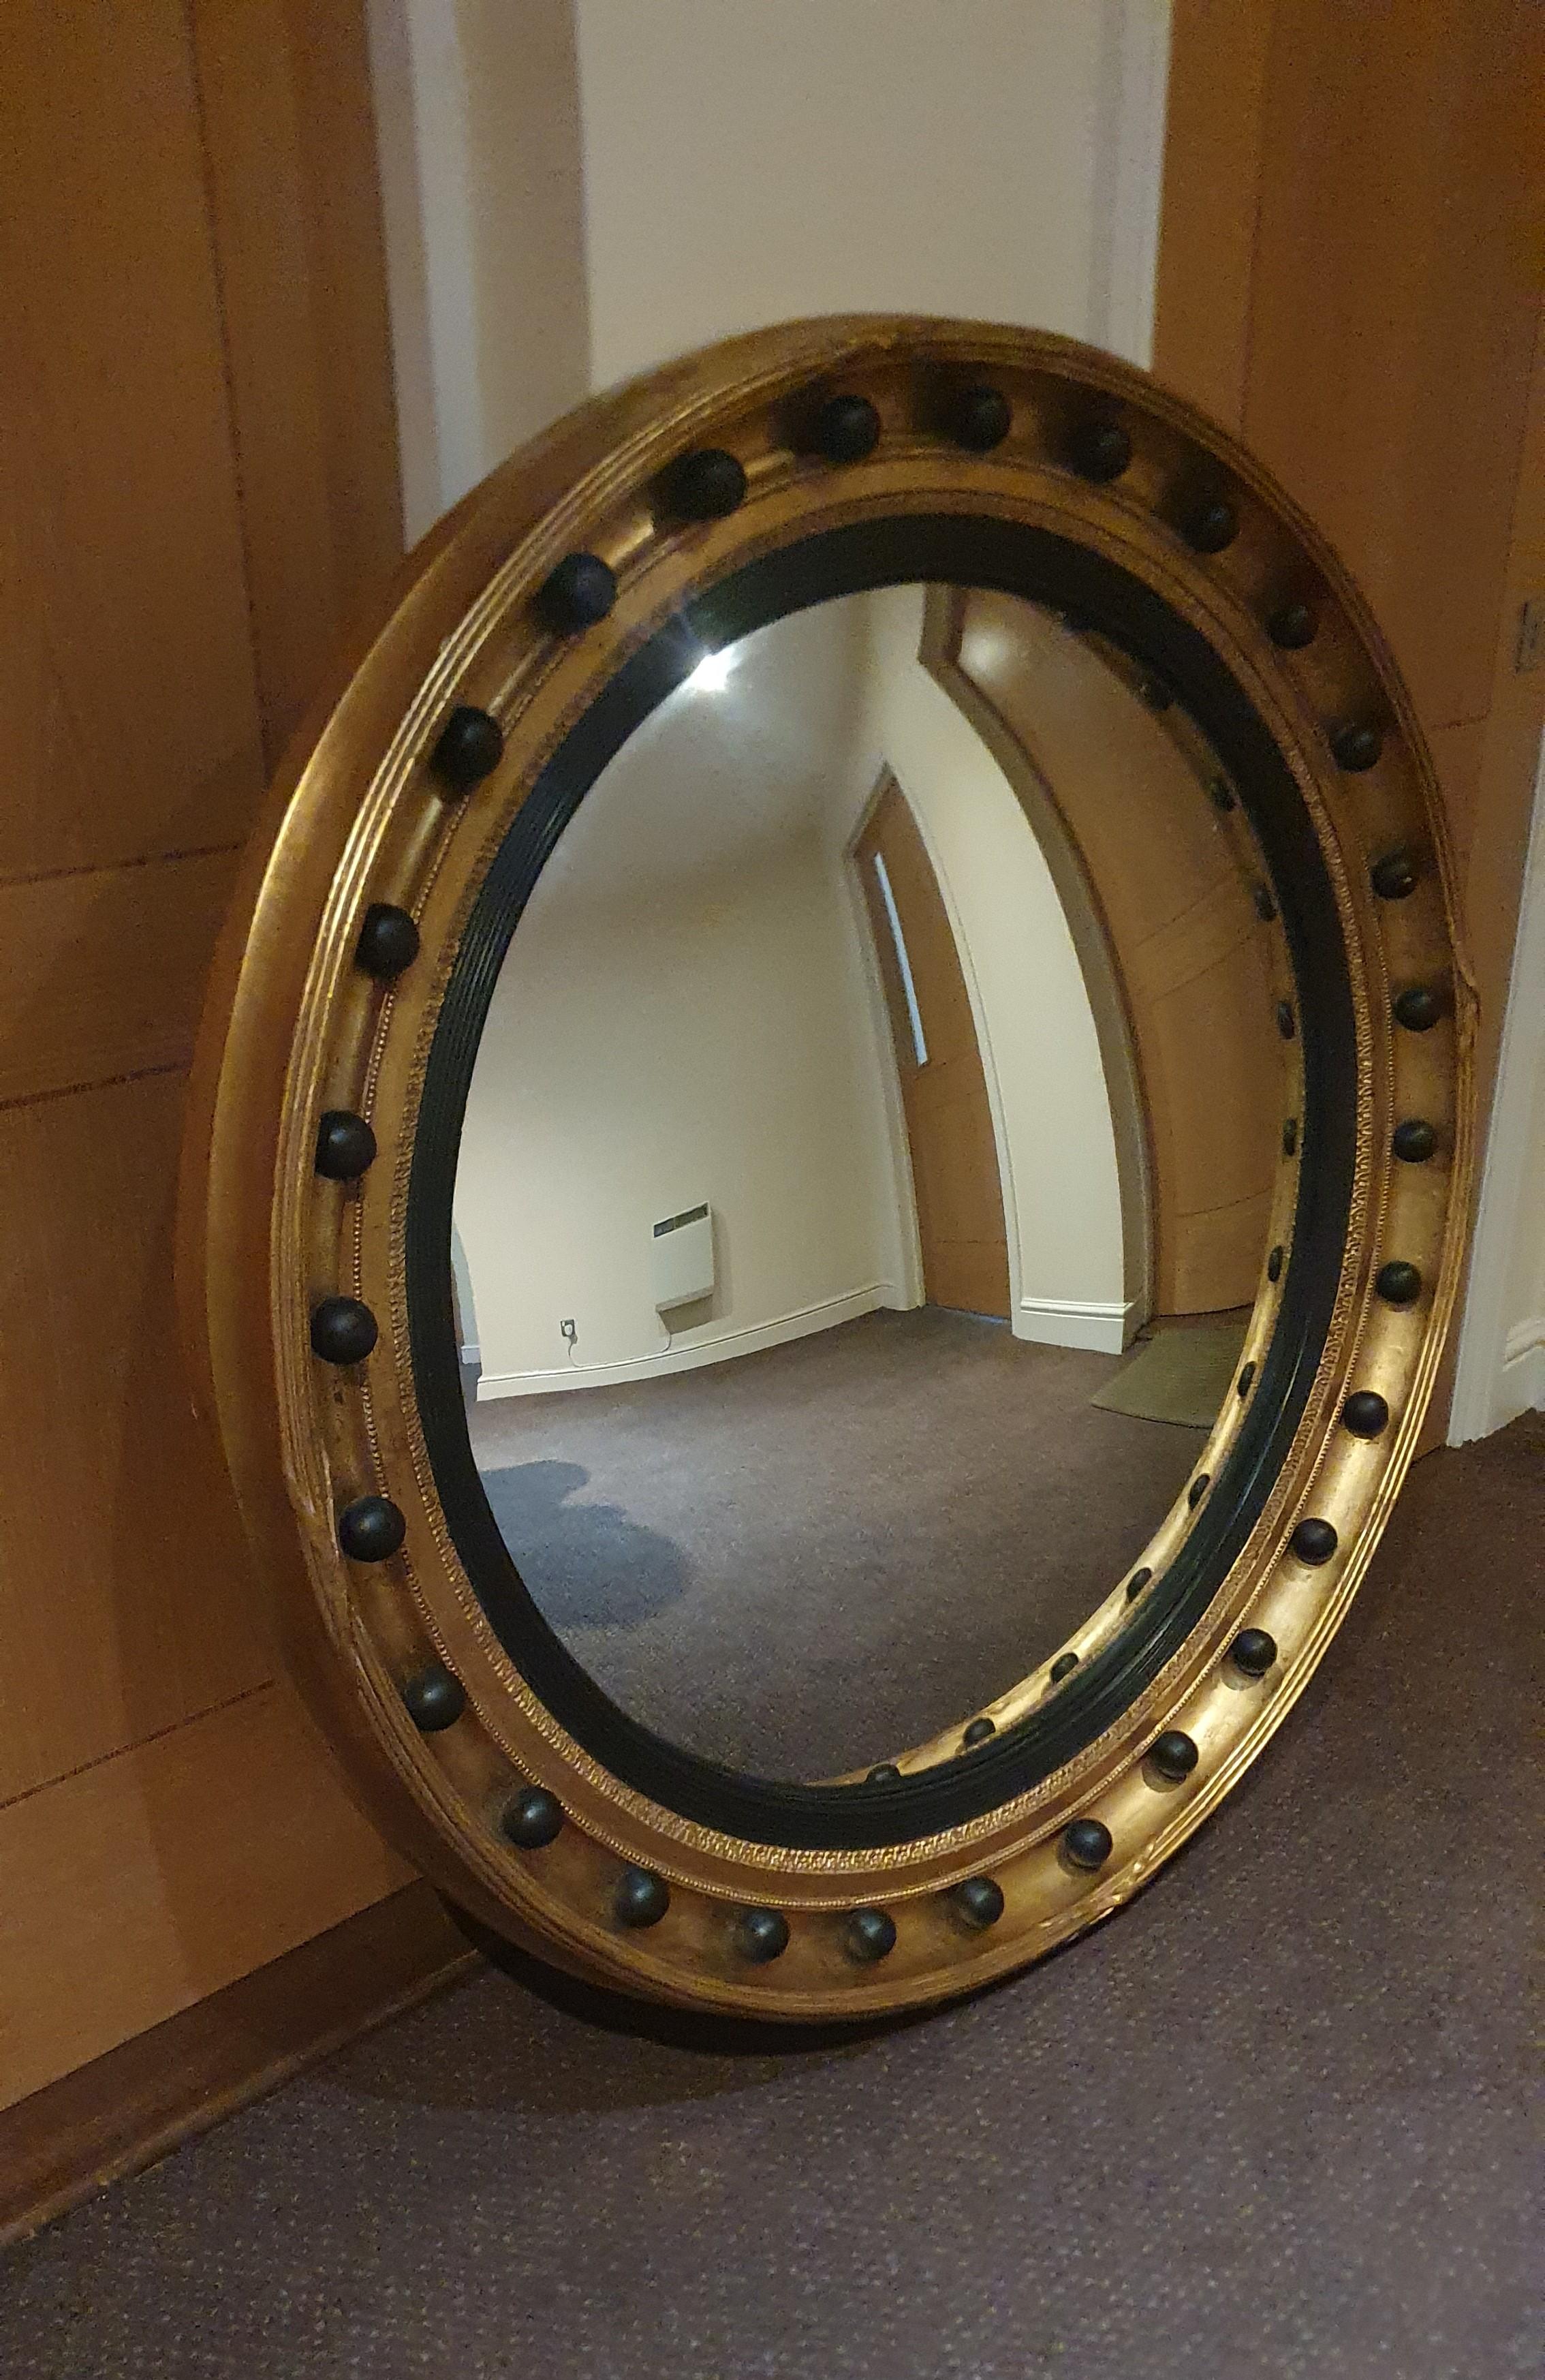 Un très beau et inhabituellement grand miroir convexe de style Regency anglais, placé dans un cadre très épais et profond en bois doré sculpté à la main, fini en dorure à l'huile avec des détails ébénisés.

Il s'agit d'un miroir et d'un cadre de